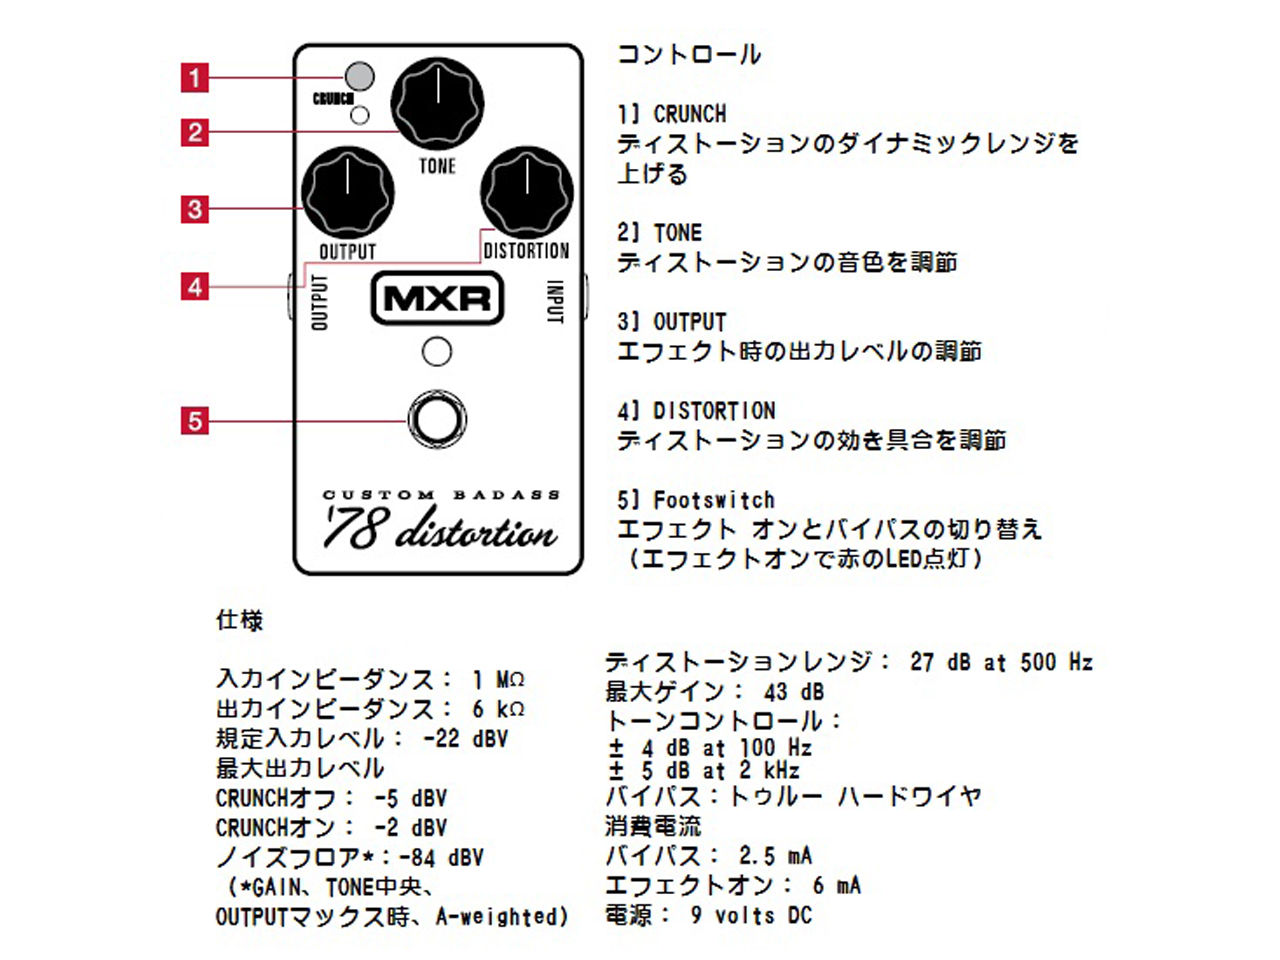 MXR(エムエックスアール) M78 Custom Badass ’78 Distortion (ディストーション) お茶の水駅前店(東京)